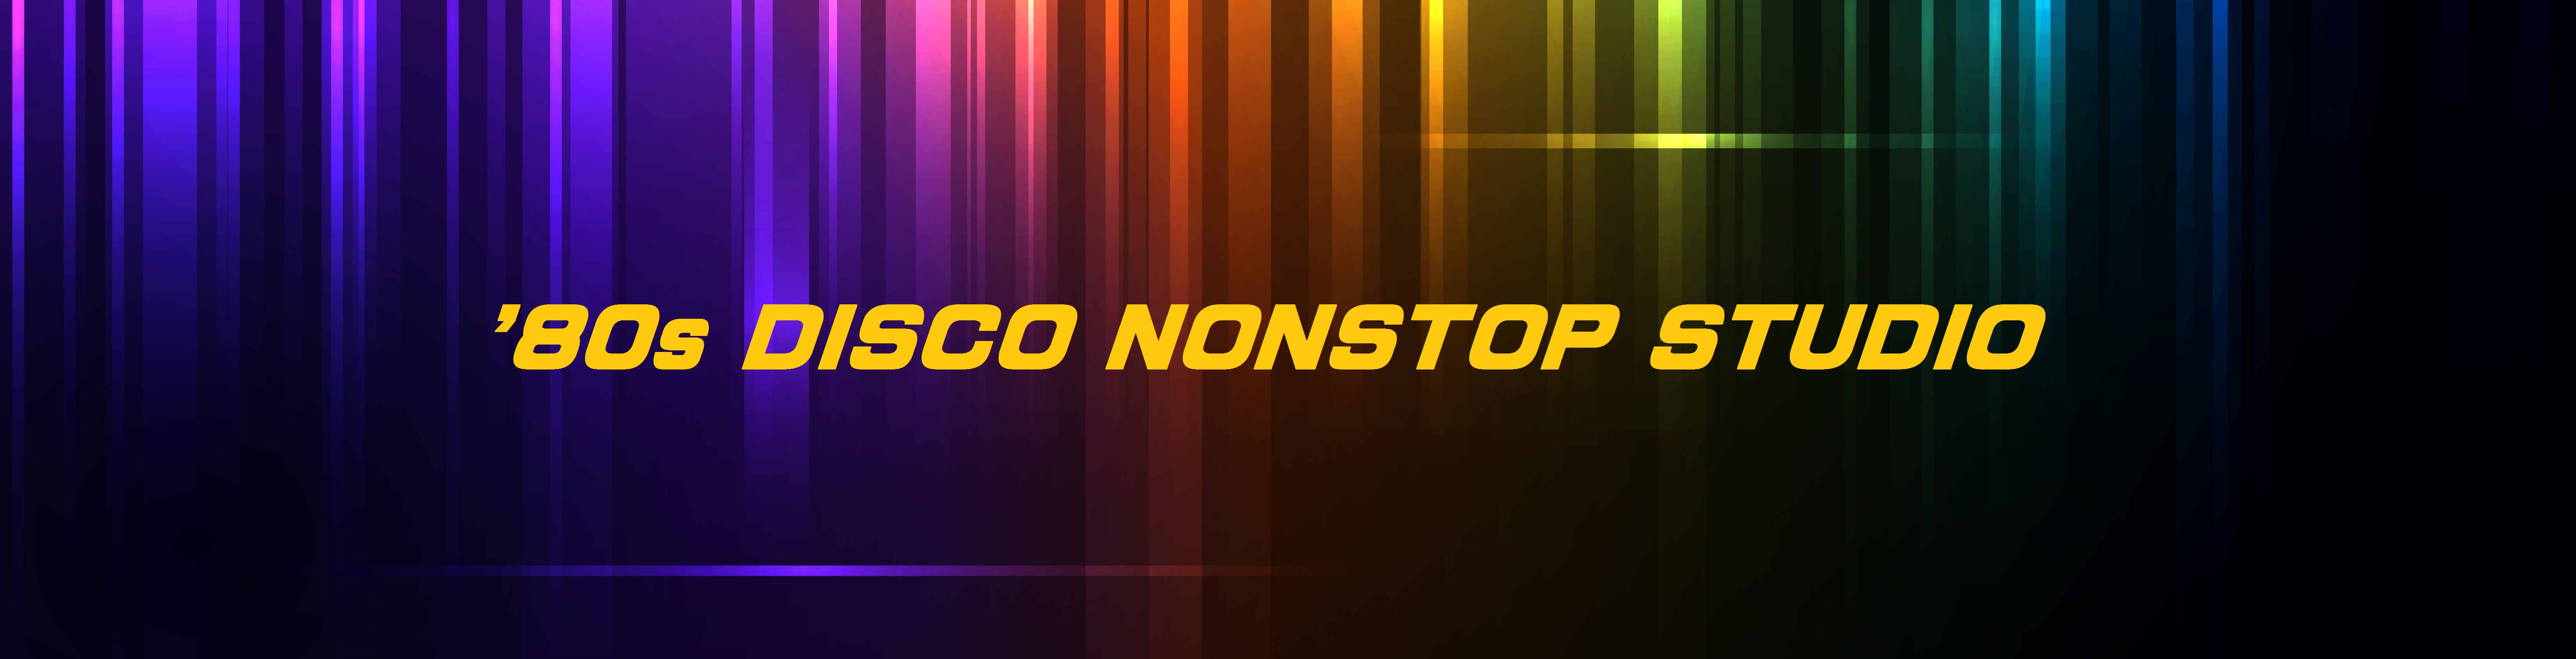 80's DISCO NONSTOP STUDIO | 80's DISCO MUSIC ♪ノンストップ♪で